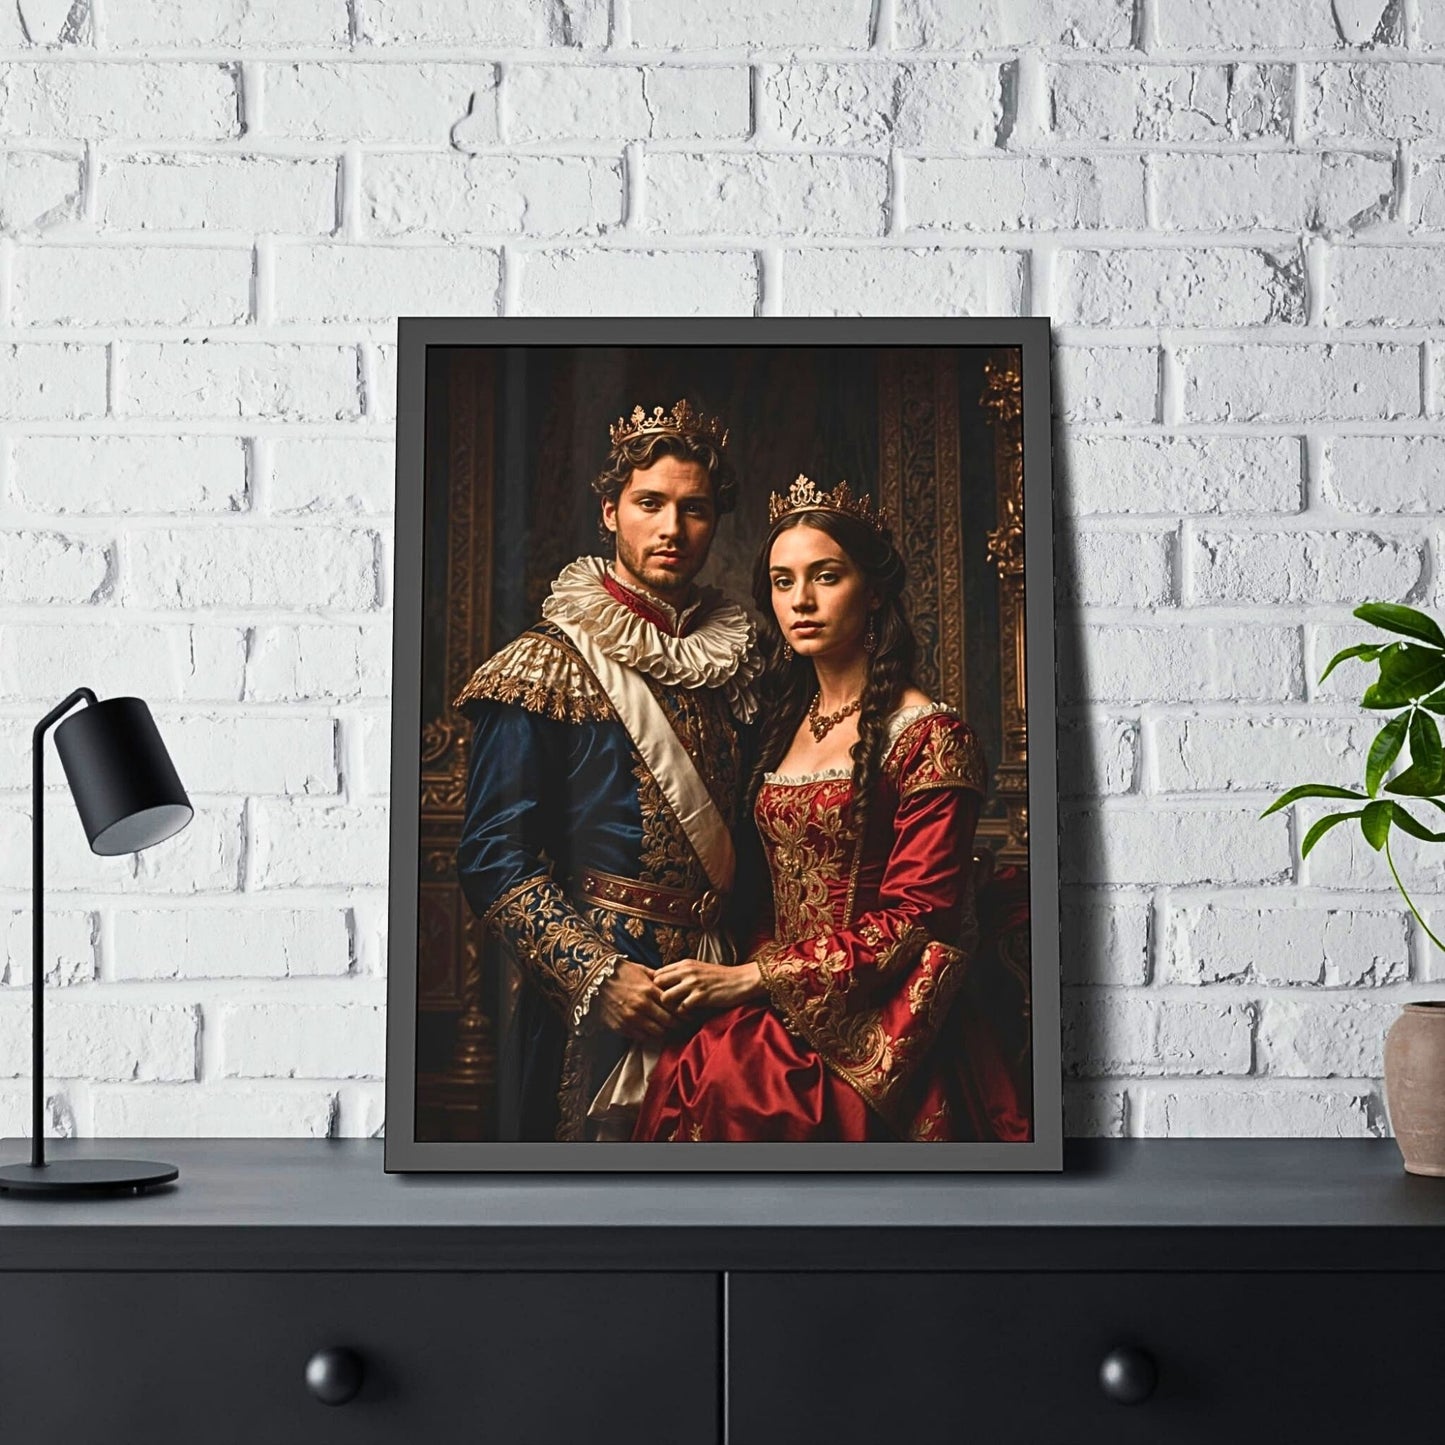 Custom Portrait, Custom Royal Couples Portrait from Photo, Renaissance Portrait, Historical Portrait, (8)